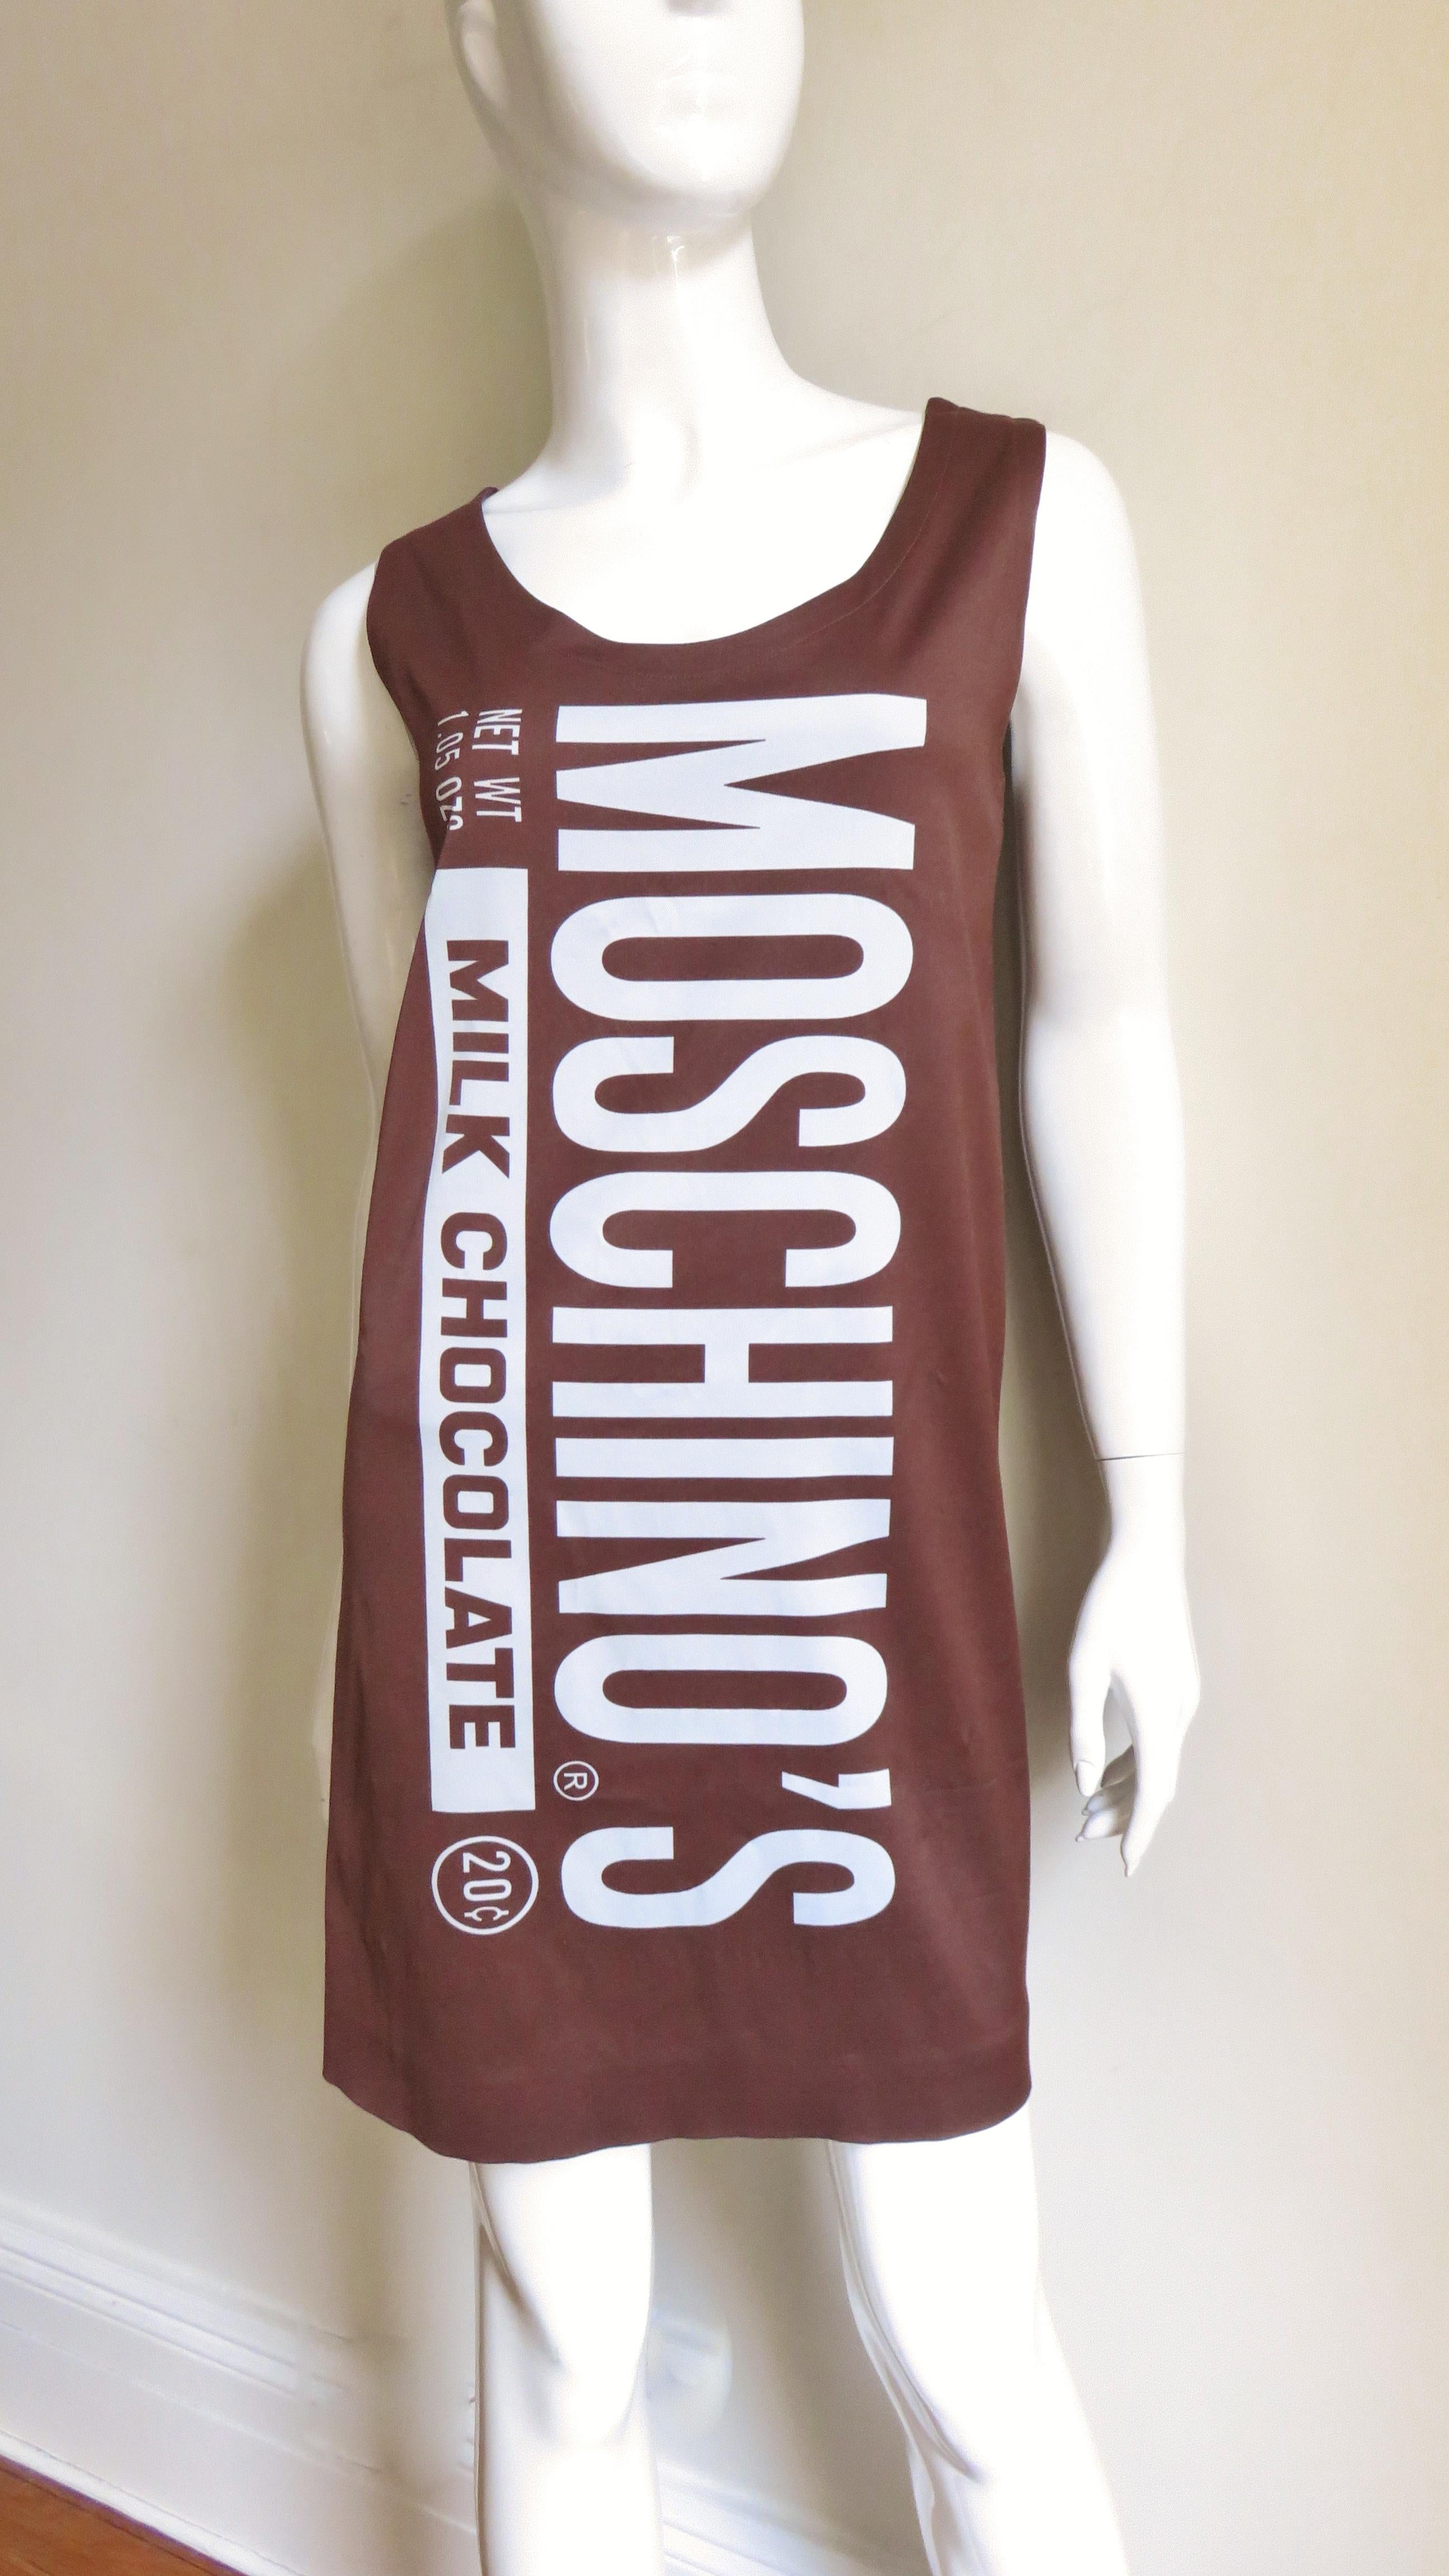 Ein fabelhaftes schokoladenbraunes Jerseykleid aus der skurrilen F/W 2014-2015 Kollektion von Jeremy Scott für Moschino Couture.  Es ist ein ärmelloses Etuikleid mit weißem Schriftzug, der die Vorderseite einer Schokoriegelverpackung nachahmt, und